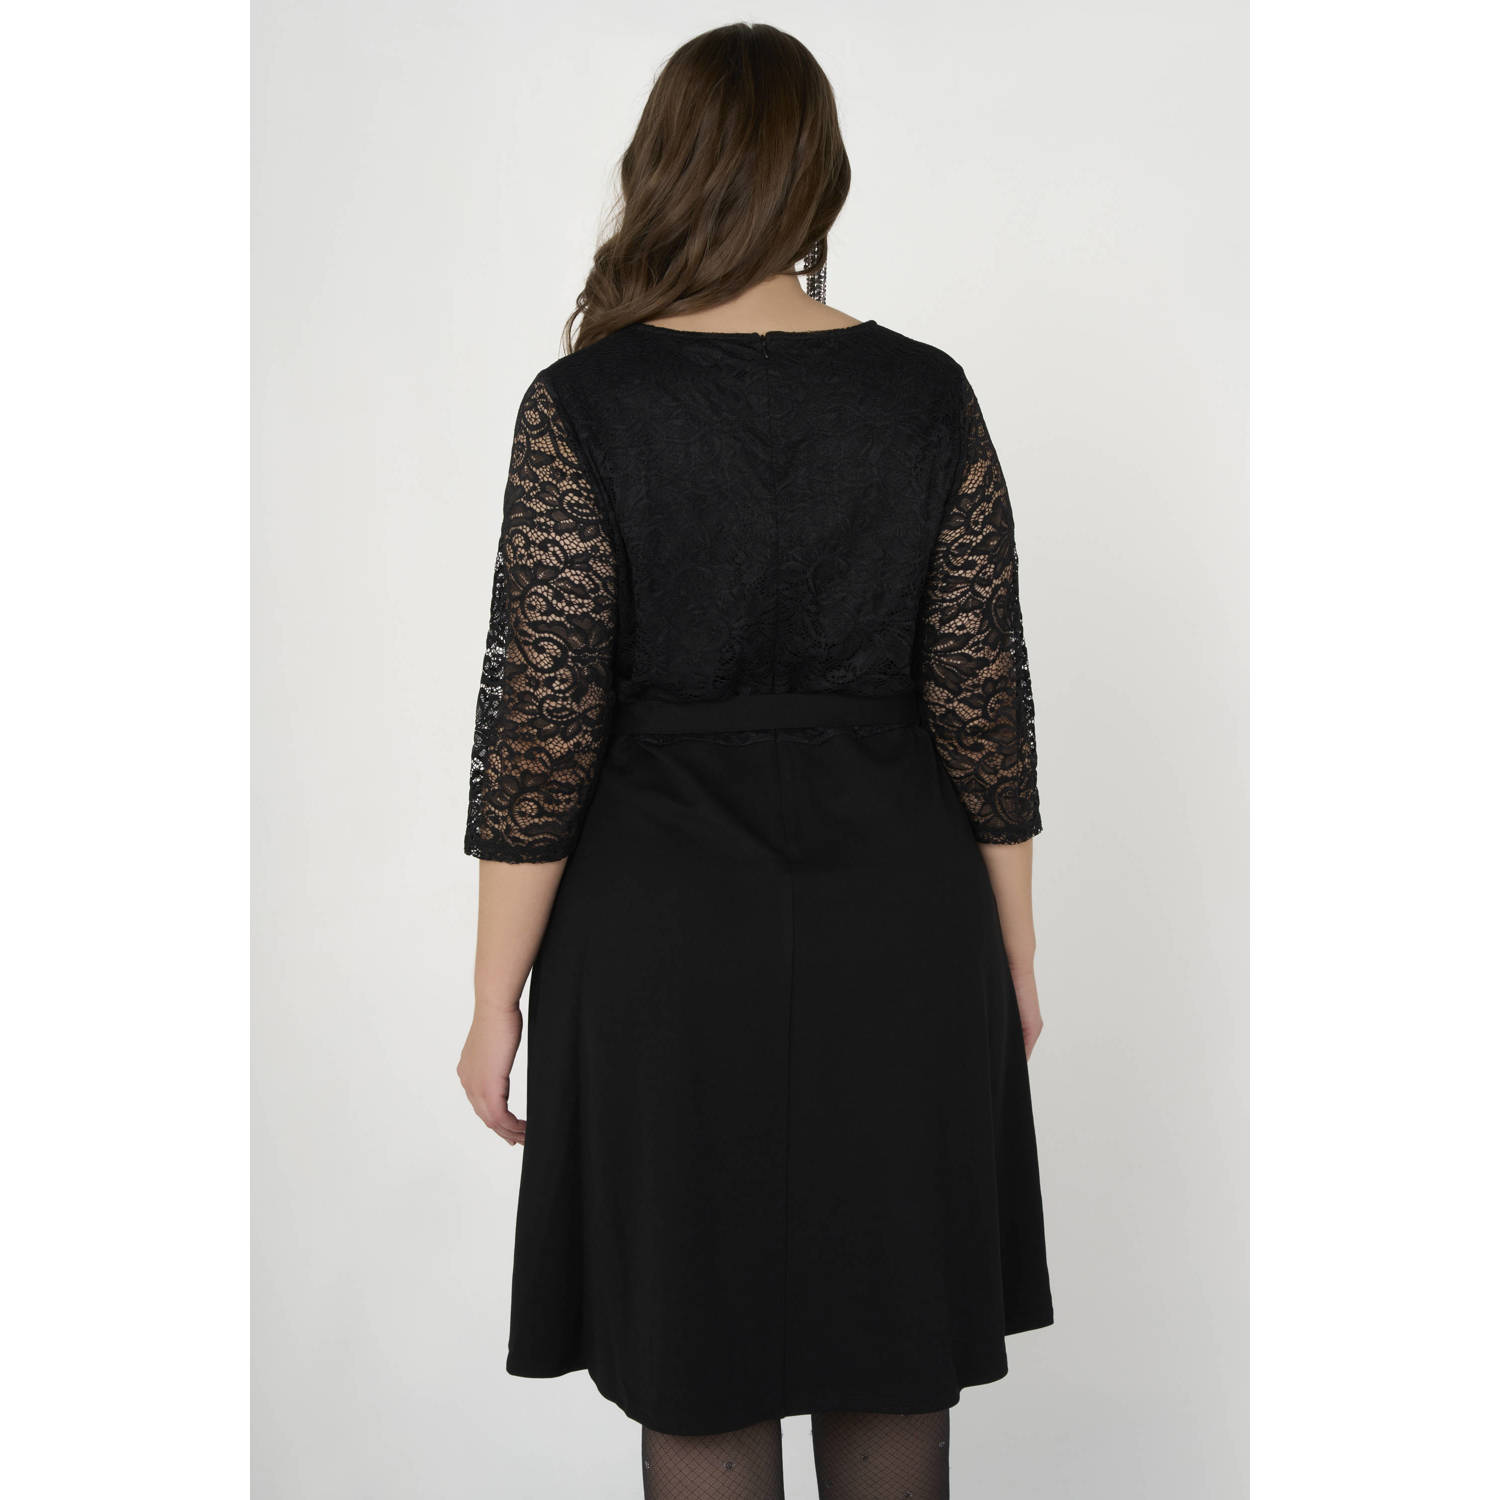 MS Mode jurk met kant zwart